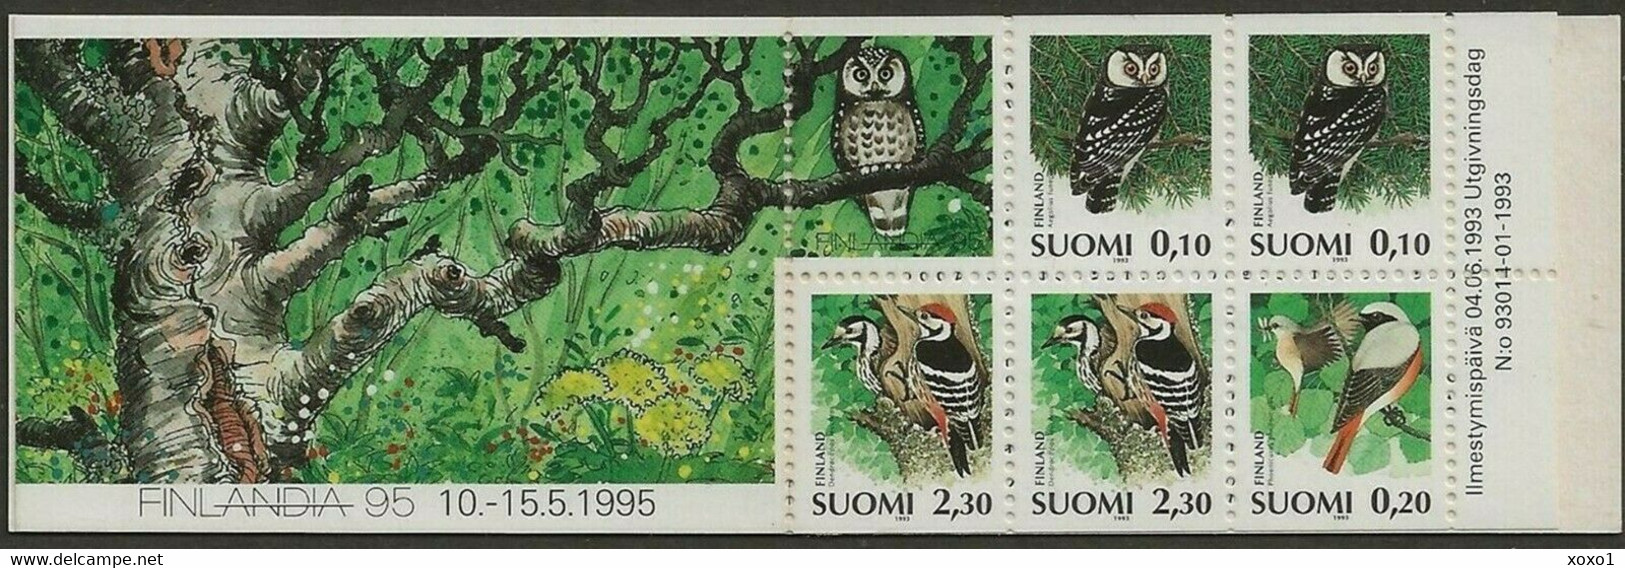 Finland 1993 MiNr. 1212 - 1214  Finnland Birds Boreal Owl, Common Redstart, White-backed Woodpecker  5v MNH** 2.70 € - Eulenvögel